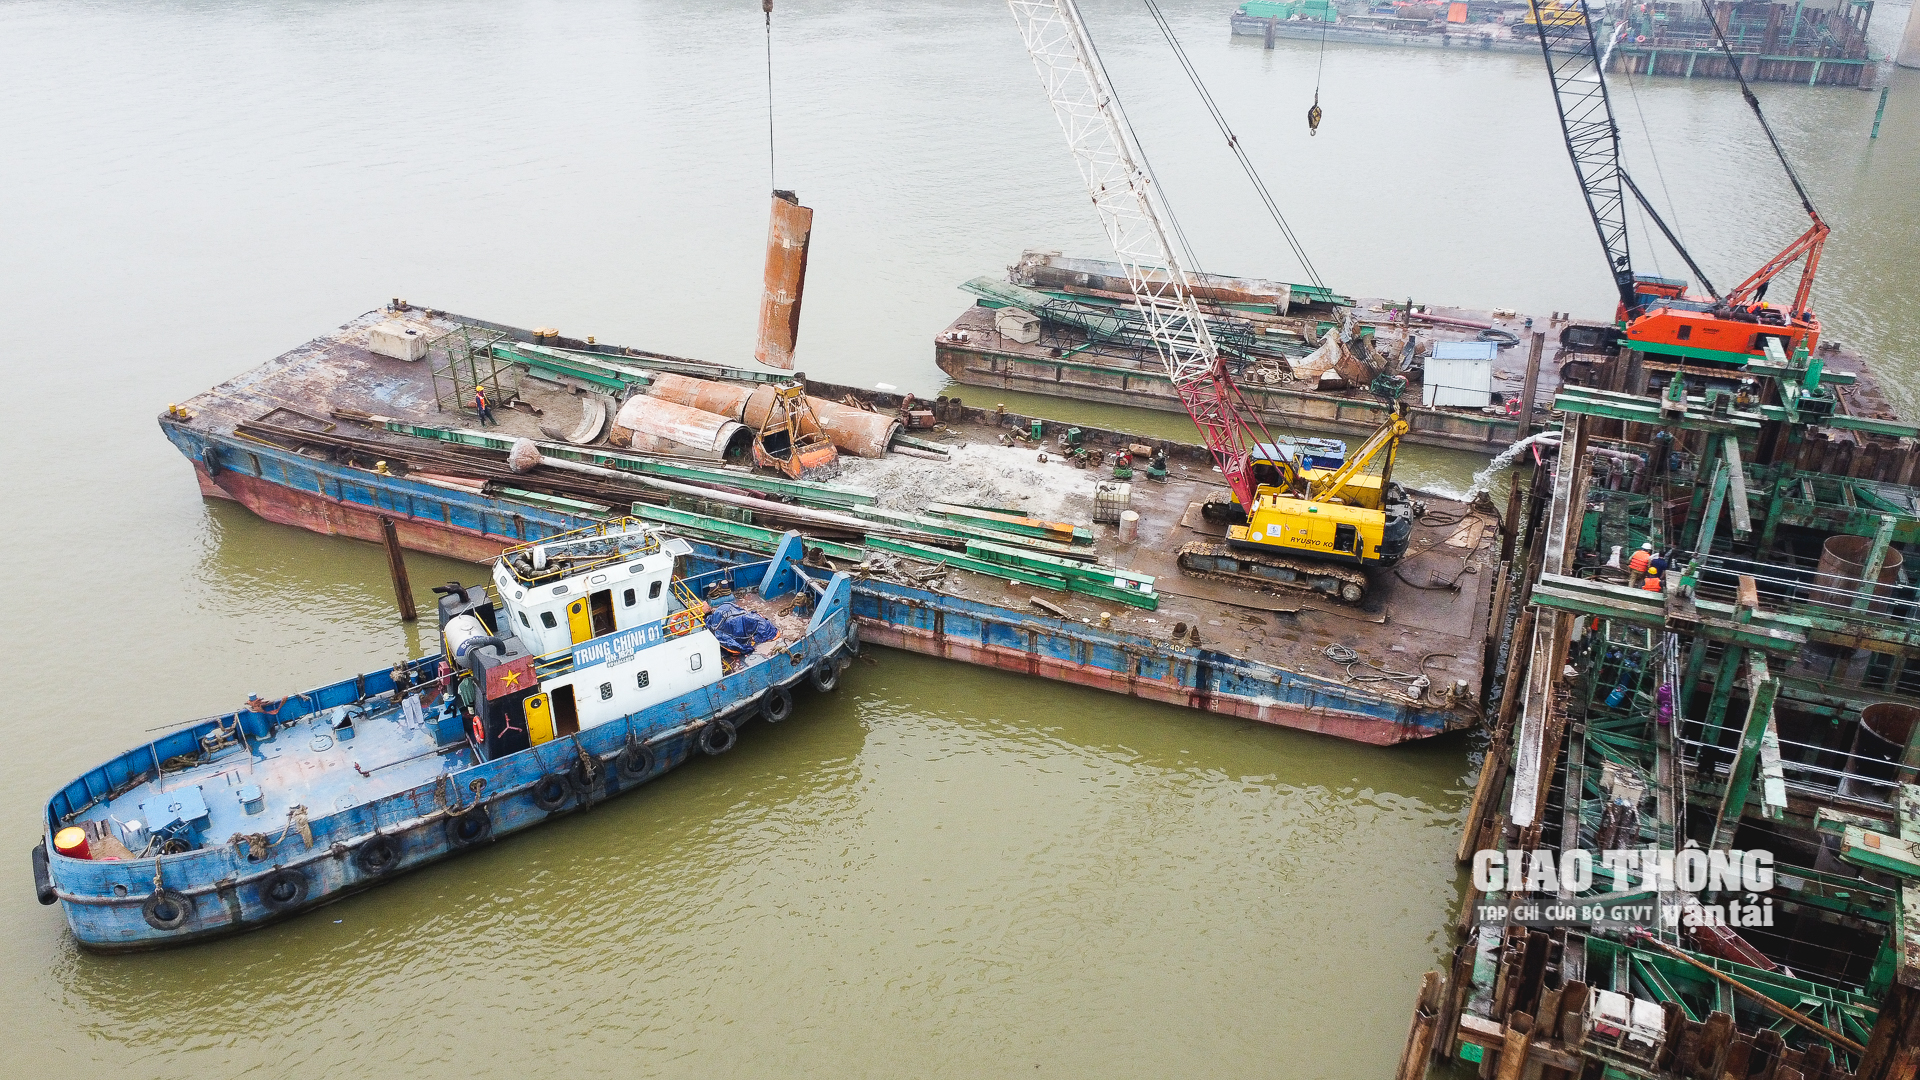 Để đáp ứng tiến độ của dự án và gói thầu XL01, liên danh nhà thầu Vinaconex - Trung Chính đang tập trung tối đa máy móc, thiết bị, nhân lực thi công các trụ cầu giữa sông, đảm bảo vượt lũ tiểu mãn trên sông Hồng (dự kiến vào cuối tháng 5/2022).